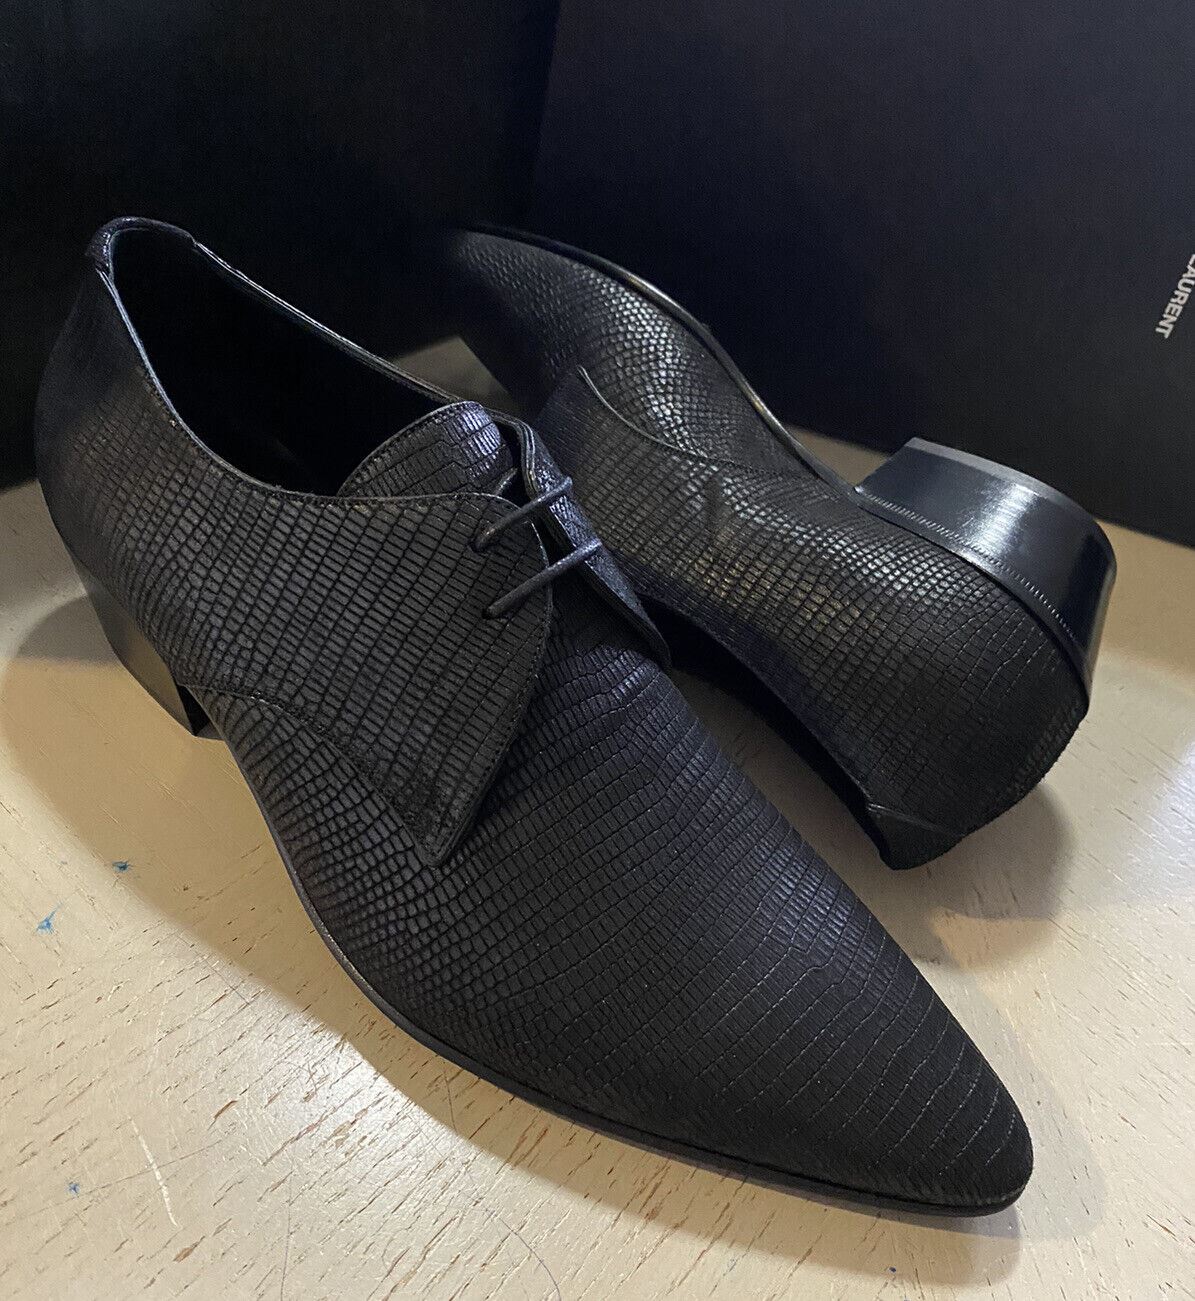 NIB $845 Saint Laurent Men’s Leather Dress Shoes Black 10 US / 43 Eu Italy